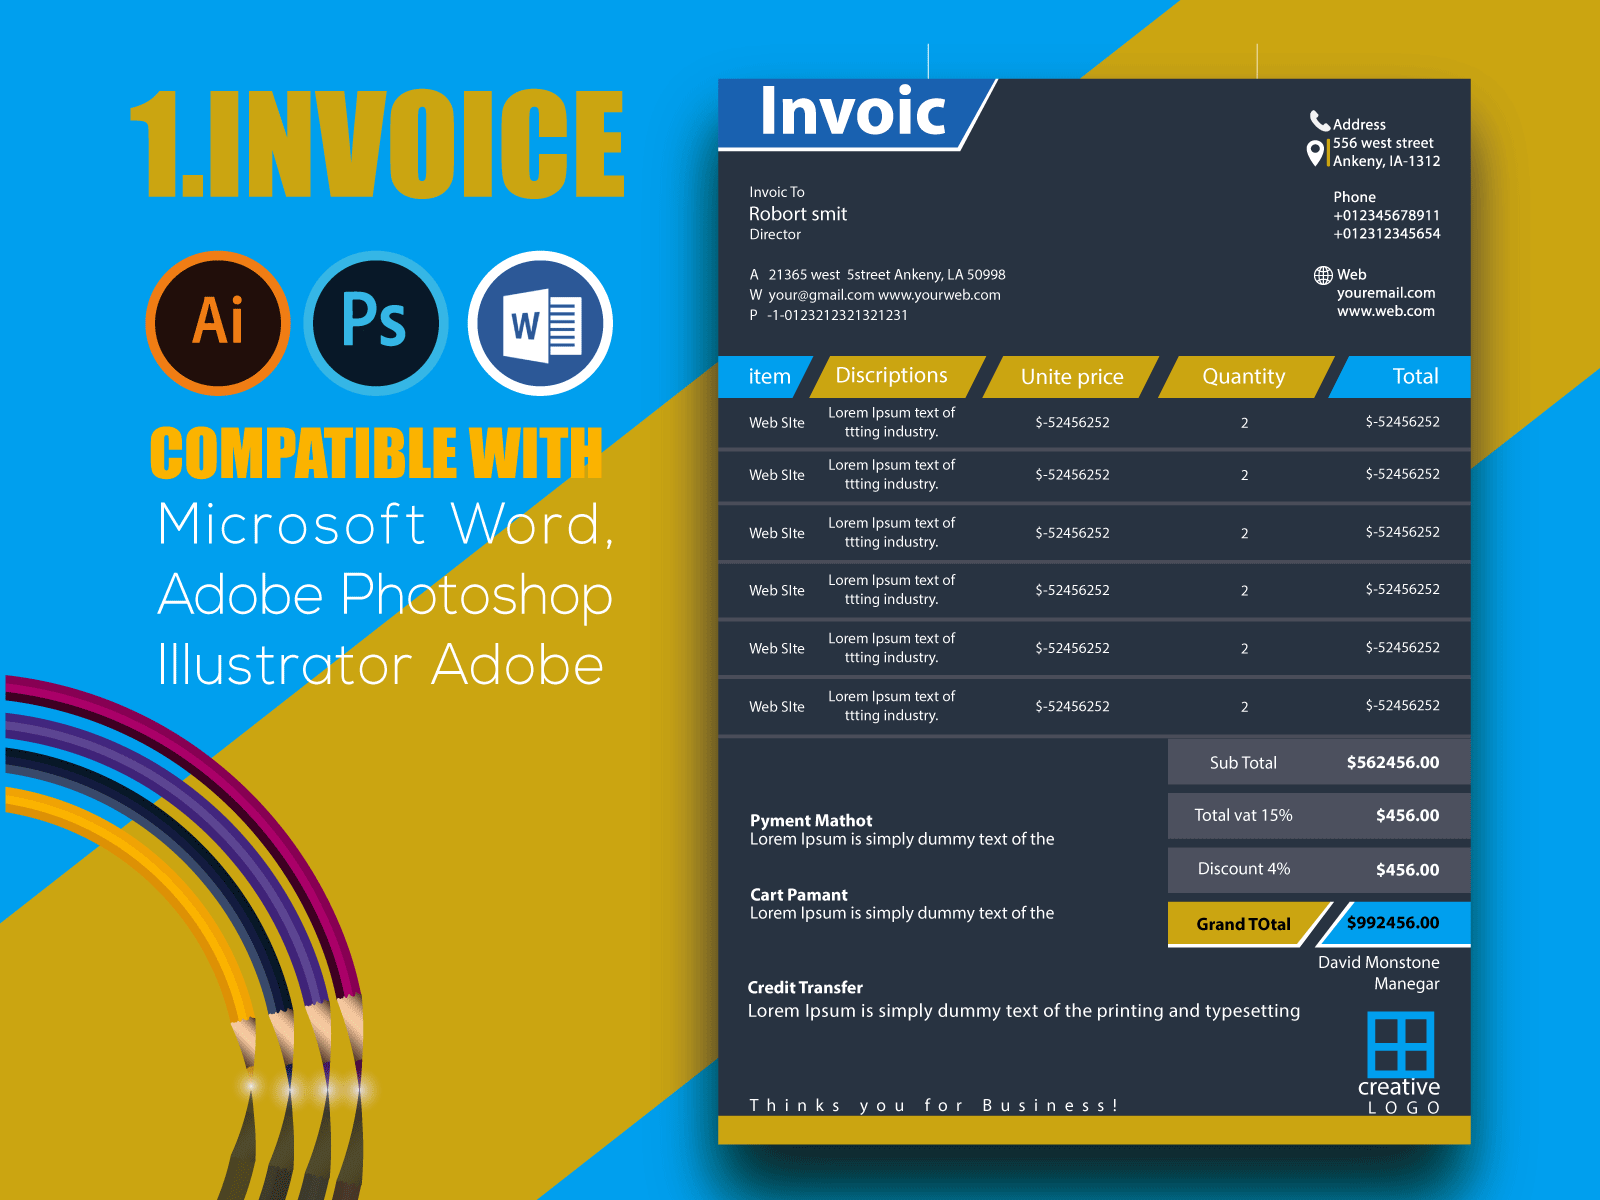 Invoice Template Design